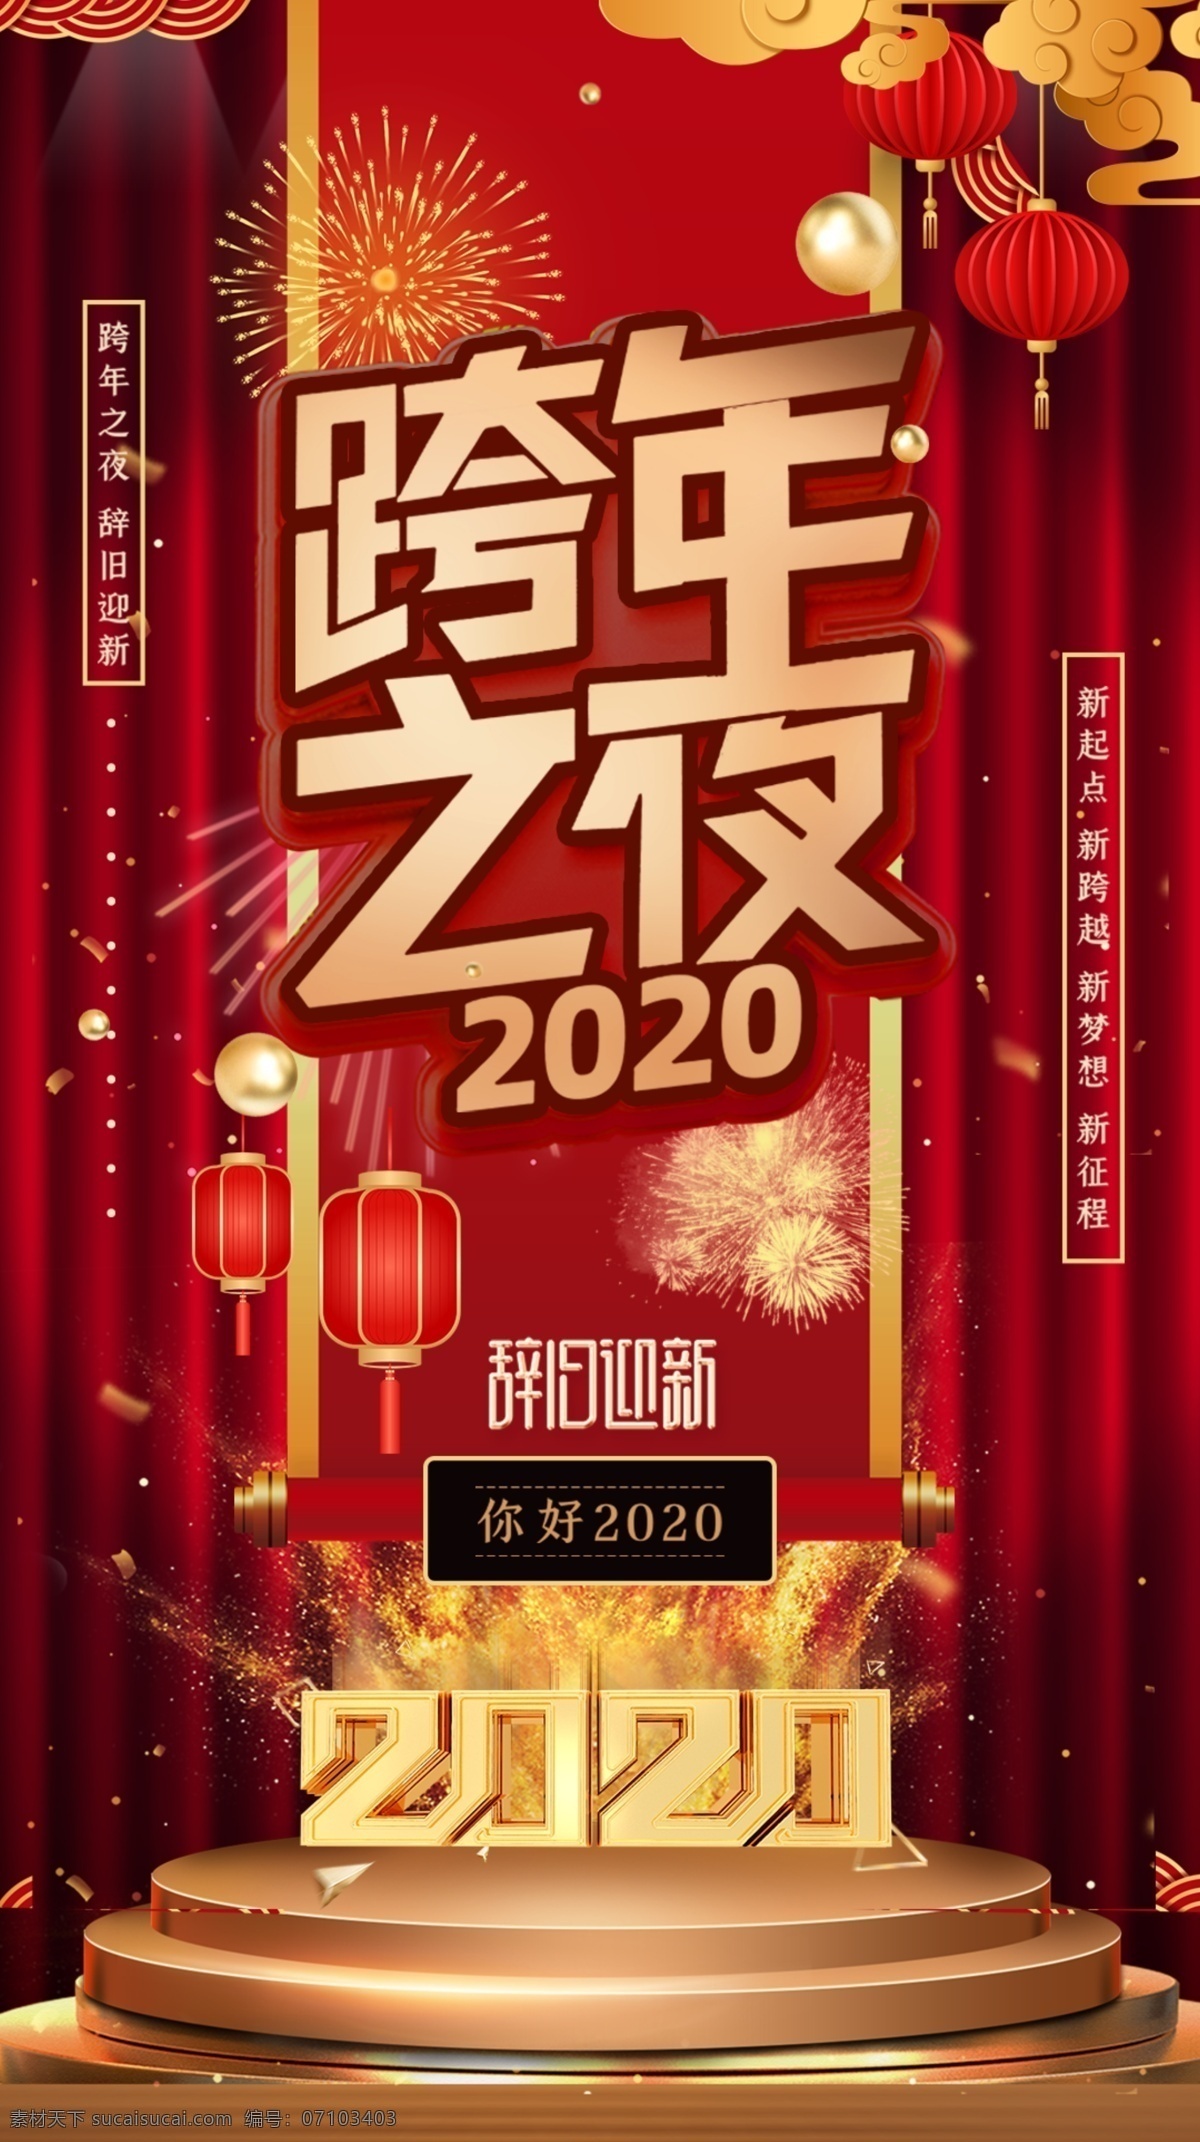 跨 年 夜 烟花 舞台 红色 大气 质感 海 跨年之夜 跨年狂欢 2020 贺新年 你好2020 跨年派对 跨年狂欢季 一起来跨年 跨年晚会 跨年夜海报